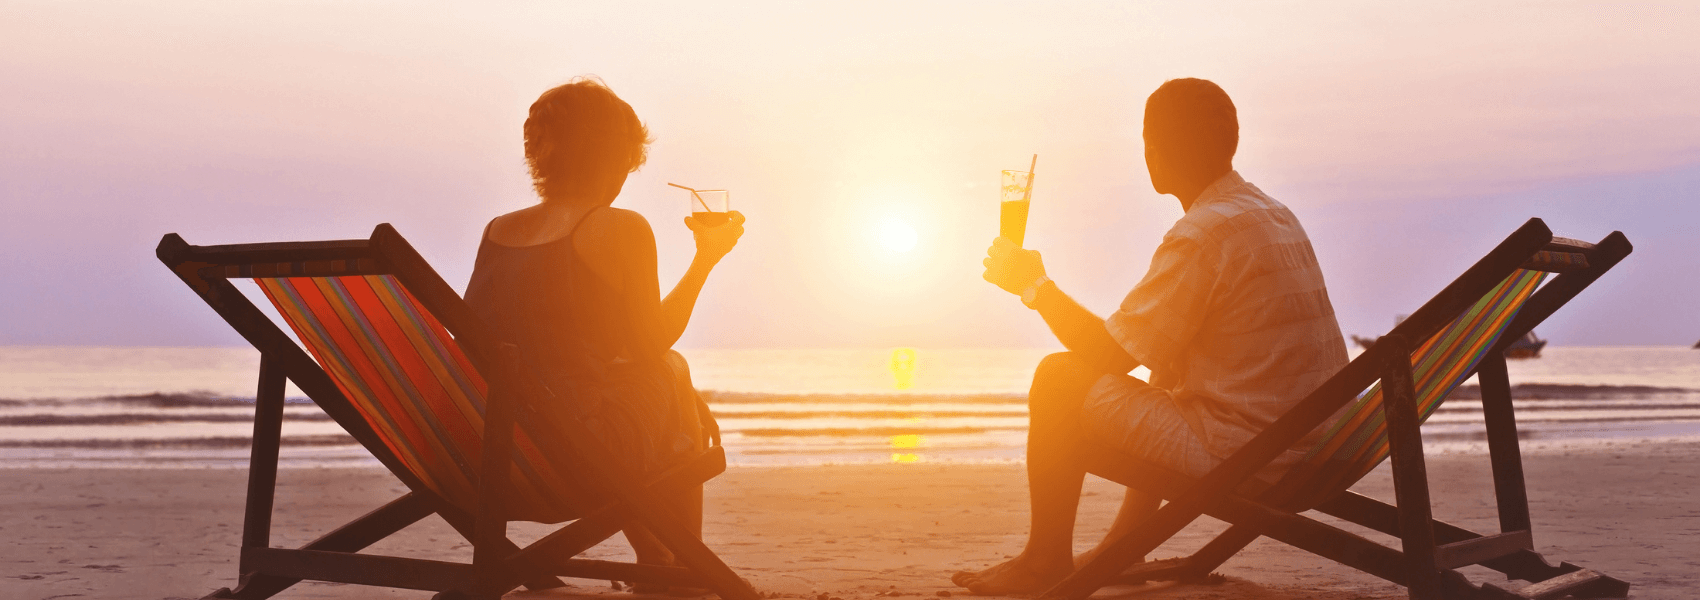 10 gode råd til en bekymringsfri ferie